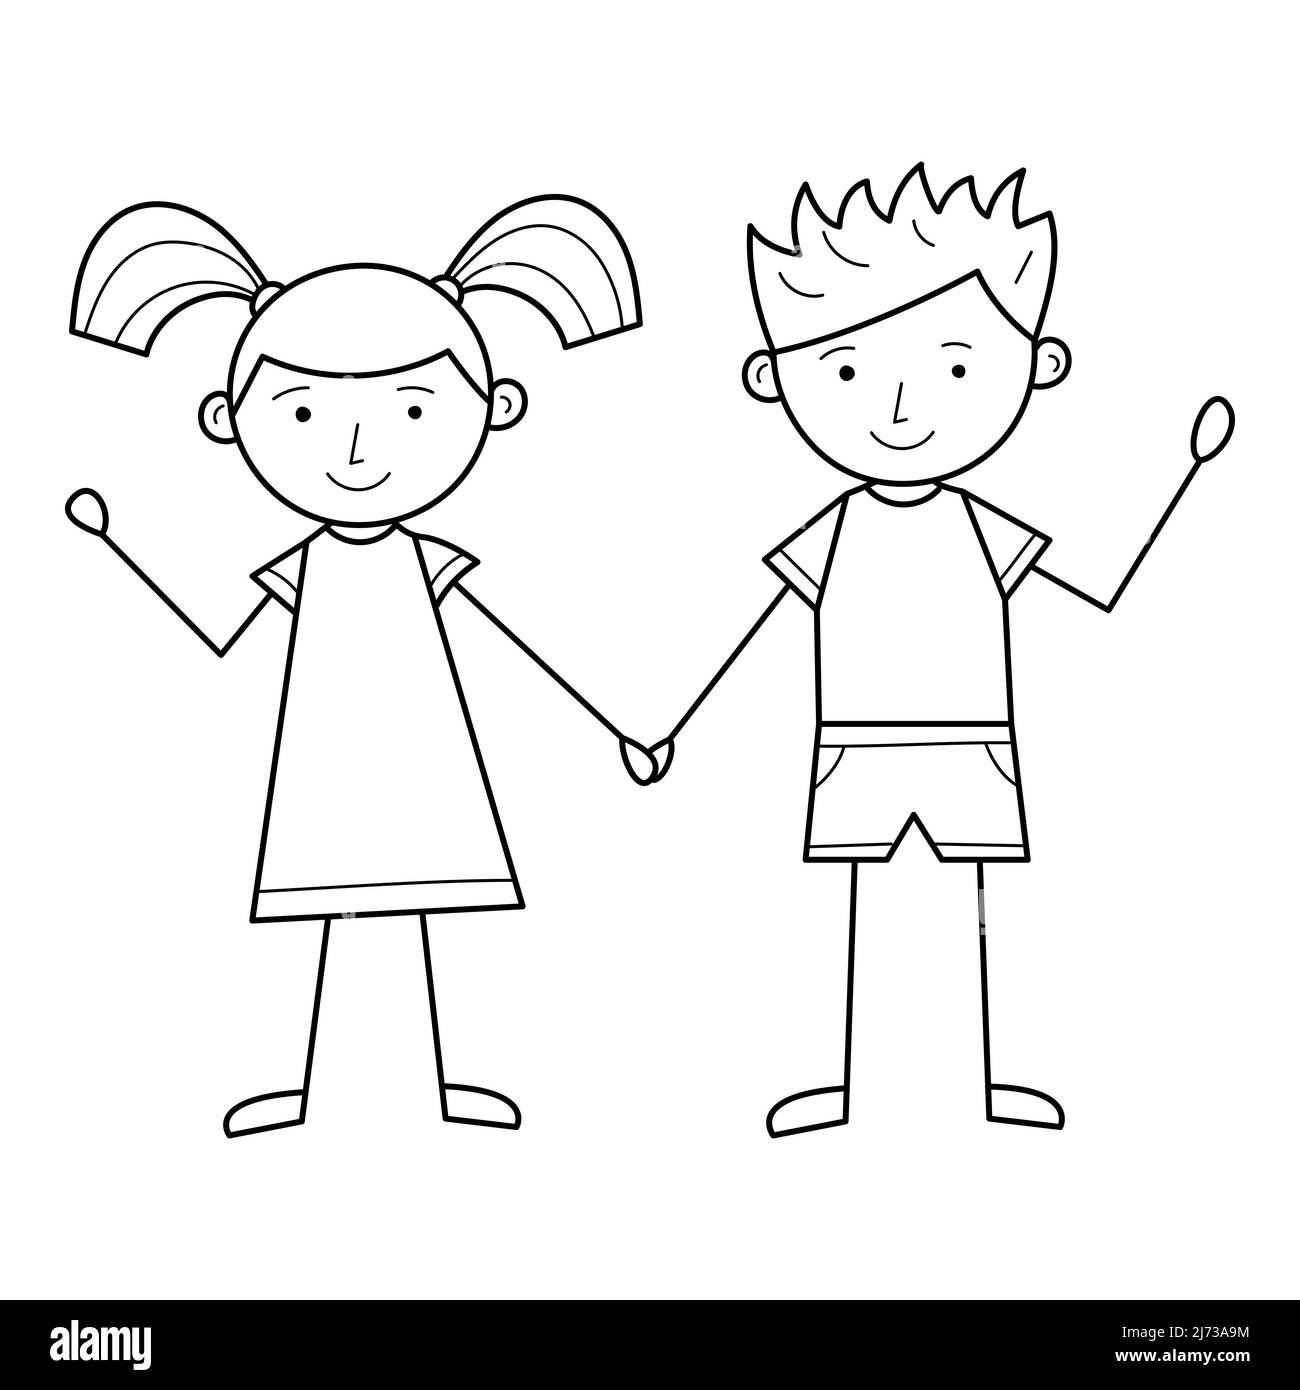 Un garçon et une fille tiennent les mains. Personnages mignons. Une mise en plan linéaire à la main. Illustration vectorielle simple en noir et blanc, isolée sur fond blanc.Han Illustration de Vecteur